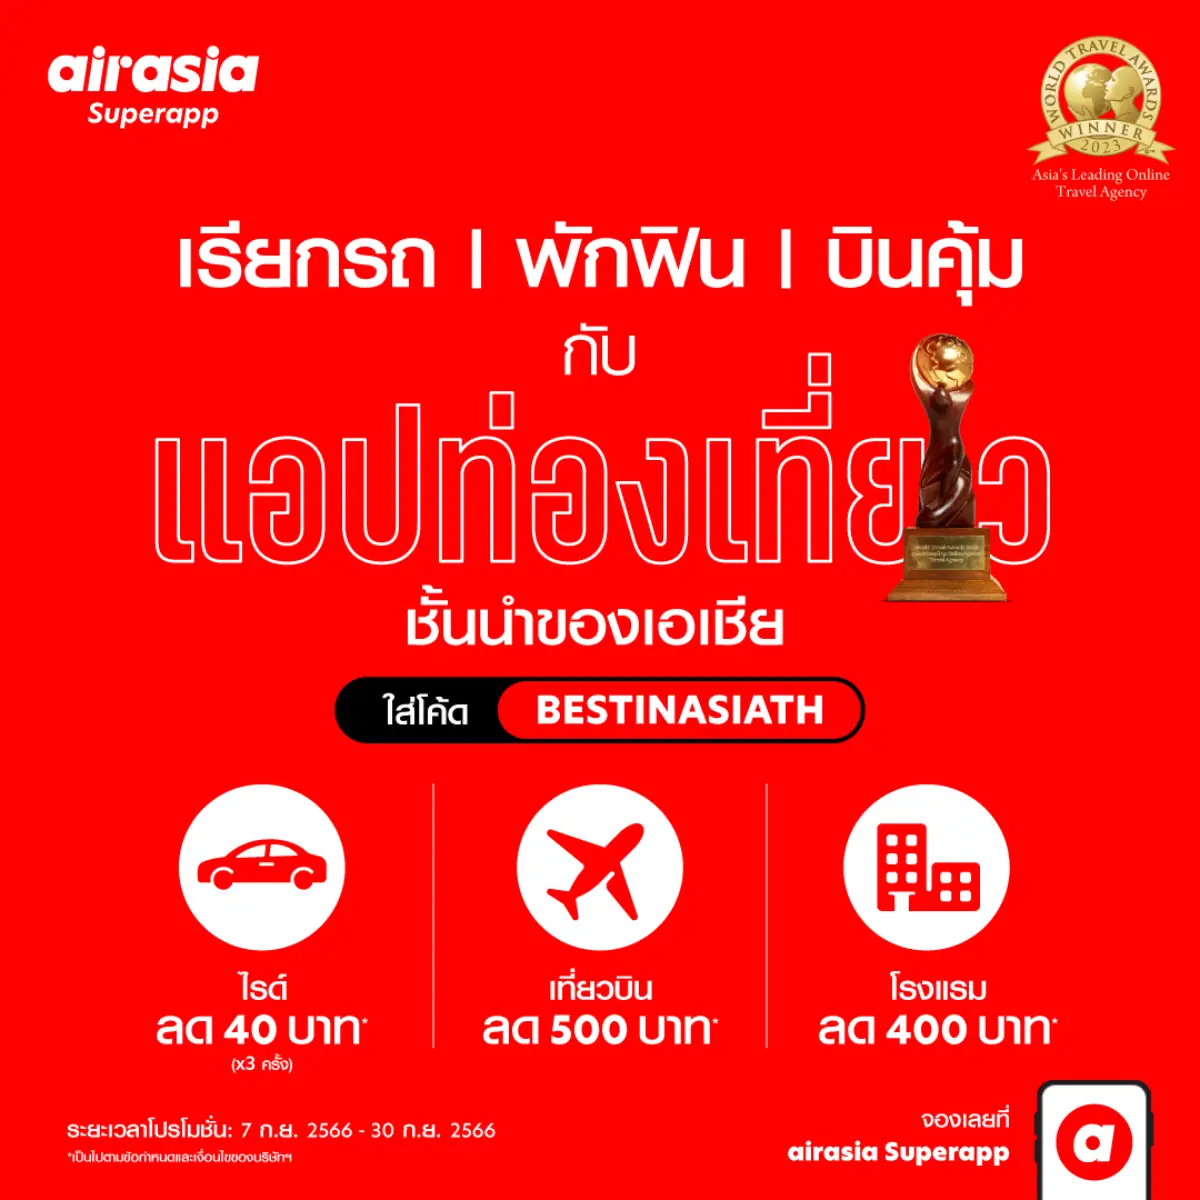 airasia รางวัล Travel Agency